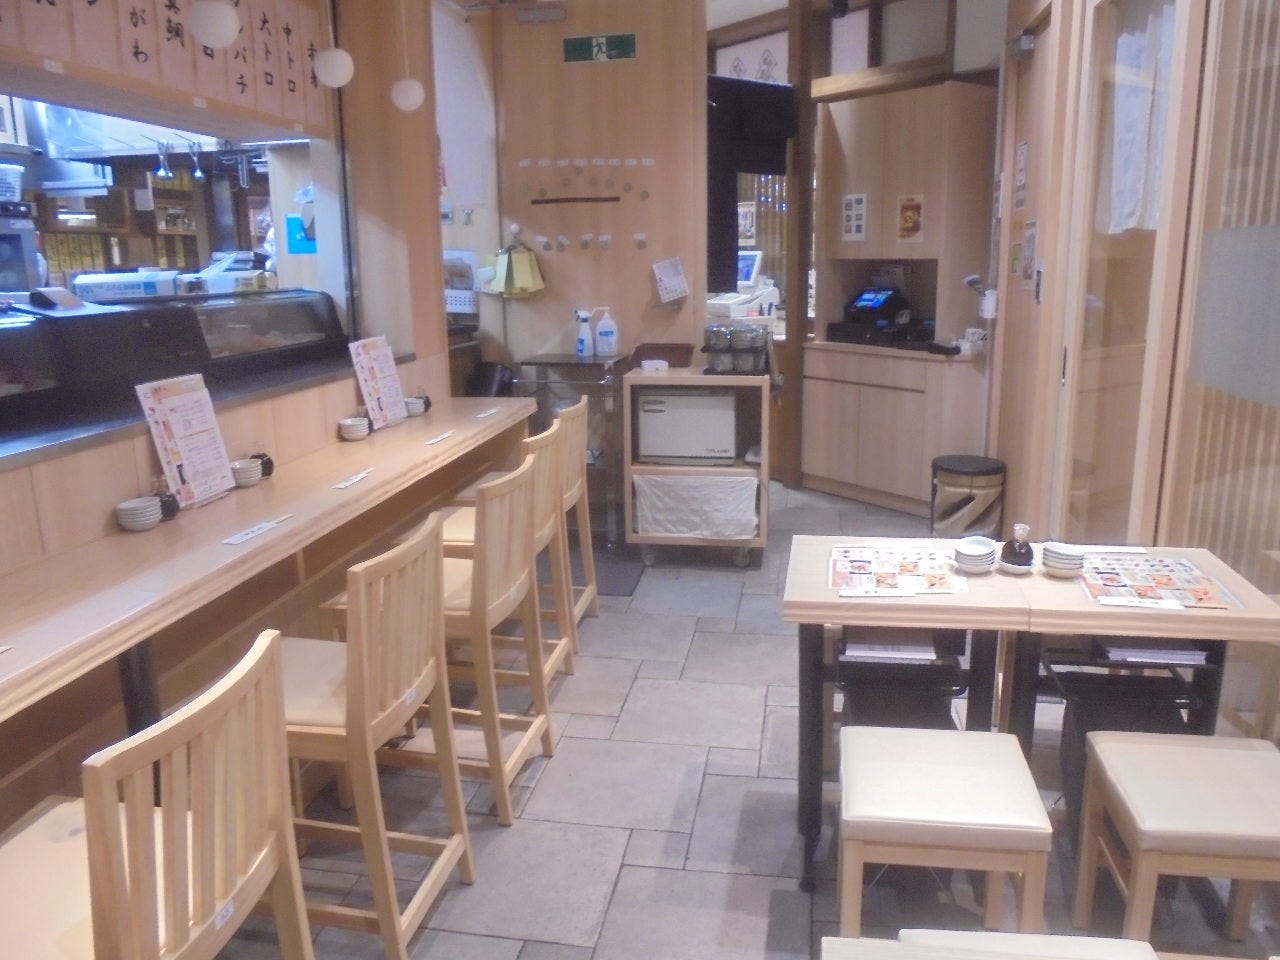 絶品寿司をくつろぎ空間で！東京駅チカのおすすめ寿司店6選の画像